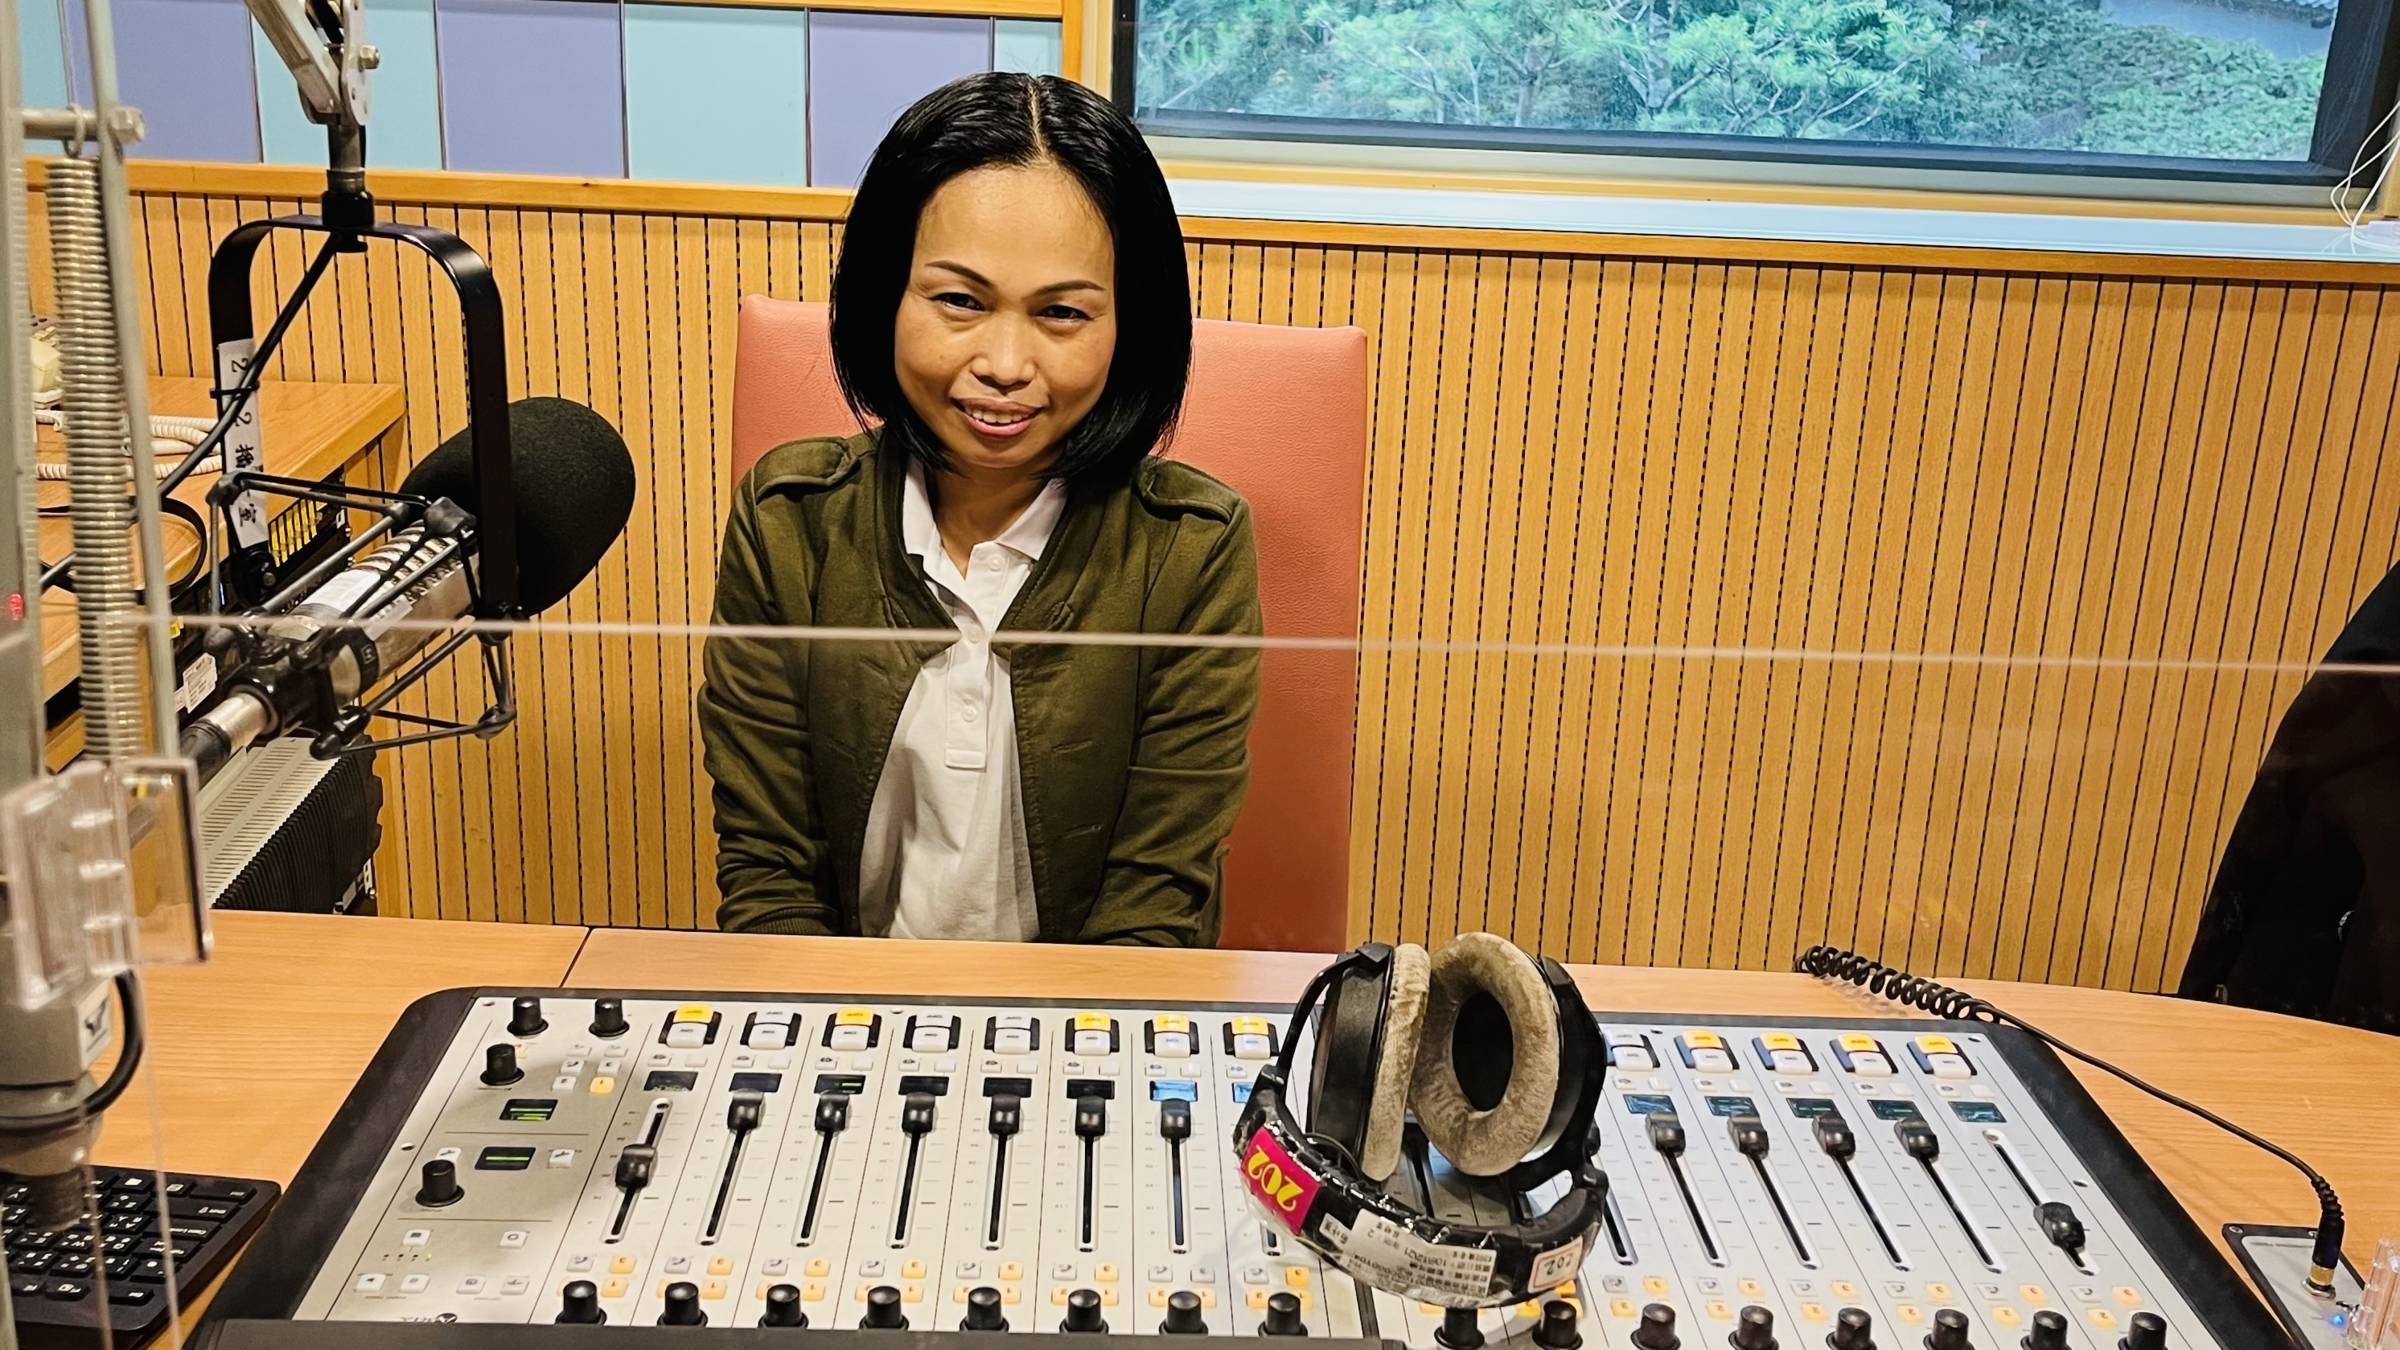 Lin Xiuwen dari Thailand menceritakan kisahnya menggadaikan kampung halamannya di Thailand untuk mendapat kesempatan bekerja di Taiwan. Sumber foto : Stasiun Radio Pendidikan